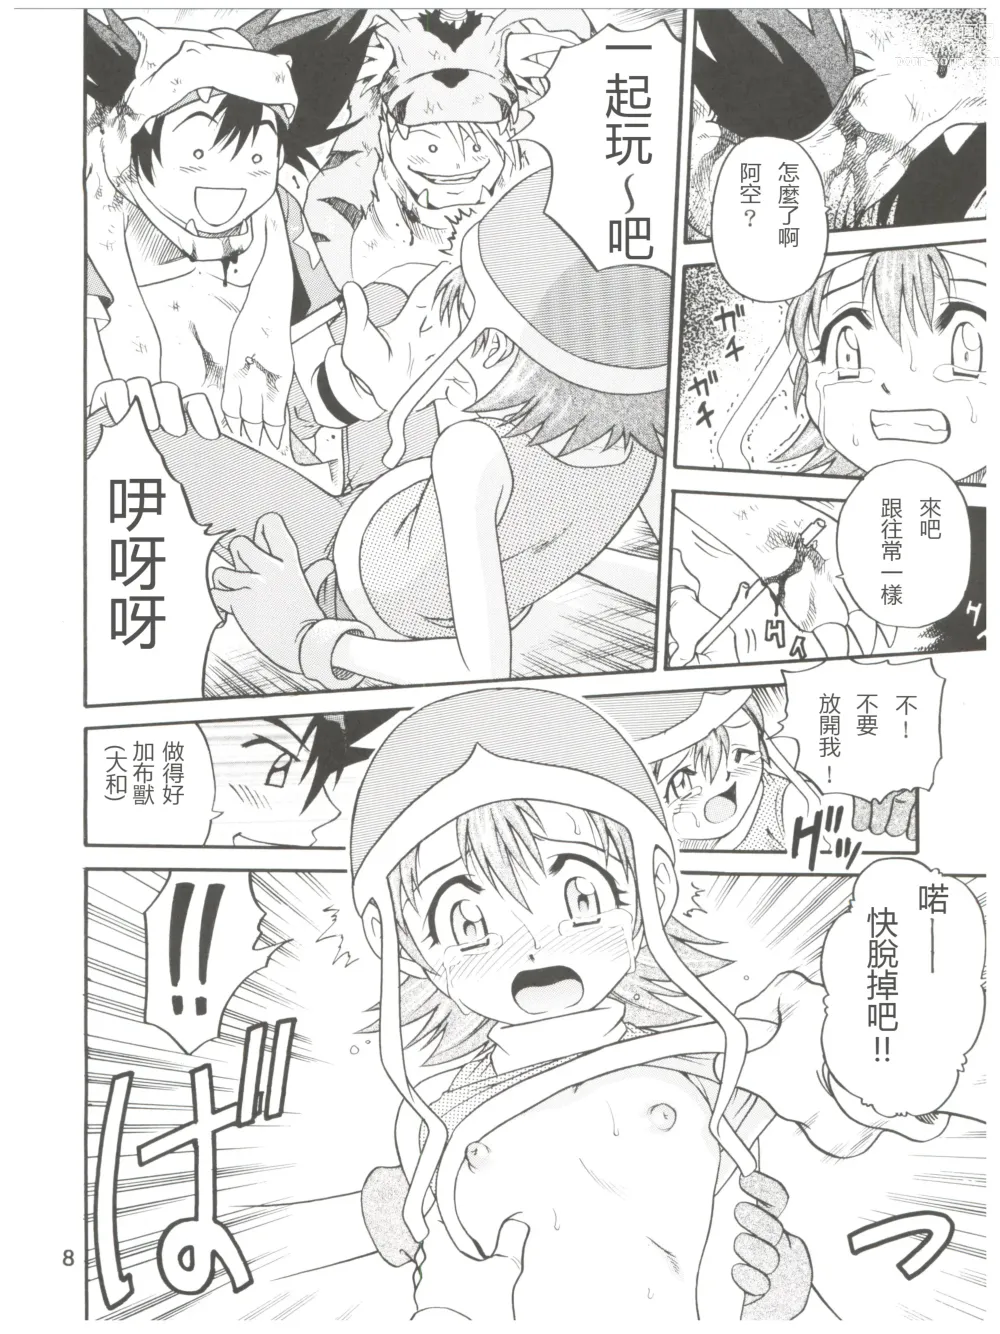 Page 8 of doujinshi Pichuu Pikachuu Daigyakusatsu